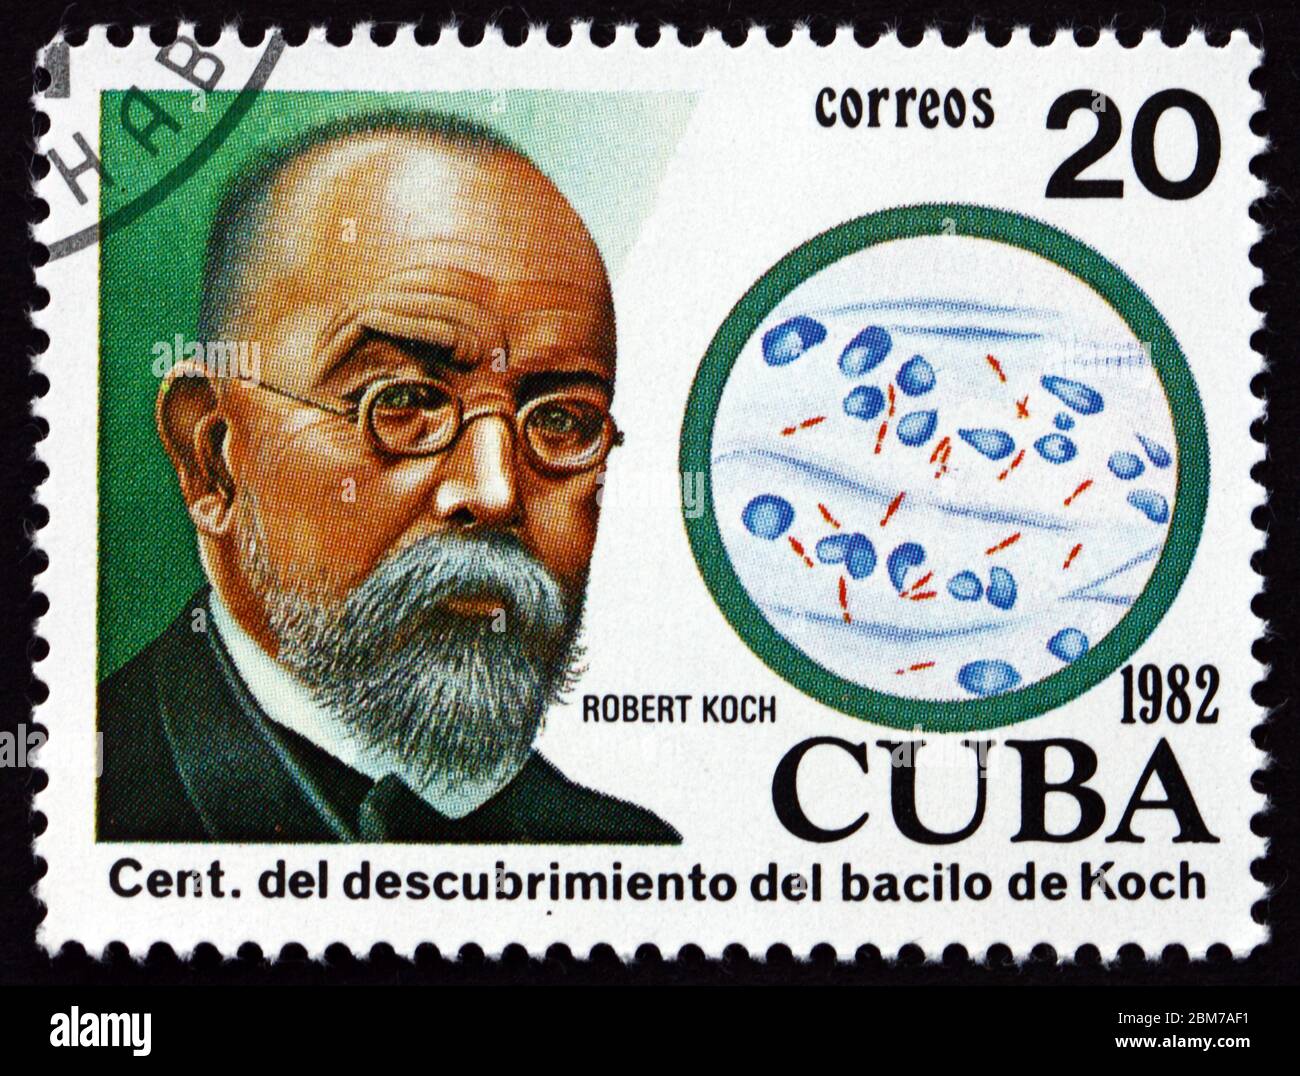 CUBA - VERS 1982 : timbre imprimé à Cuba dédié à la découverte du bacille de la tubercle par le dr. Robert Koch, vers 1982 Banque D'Images